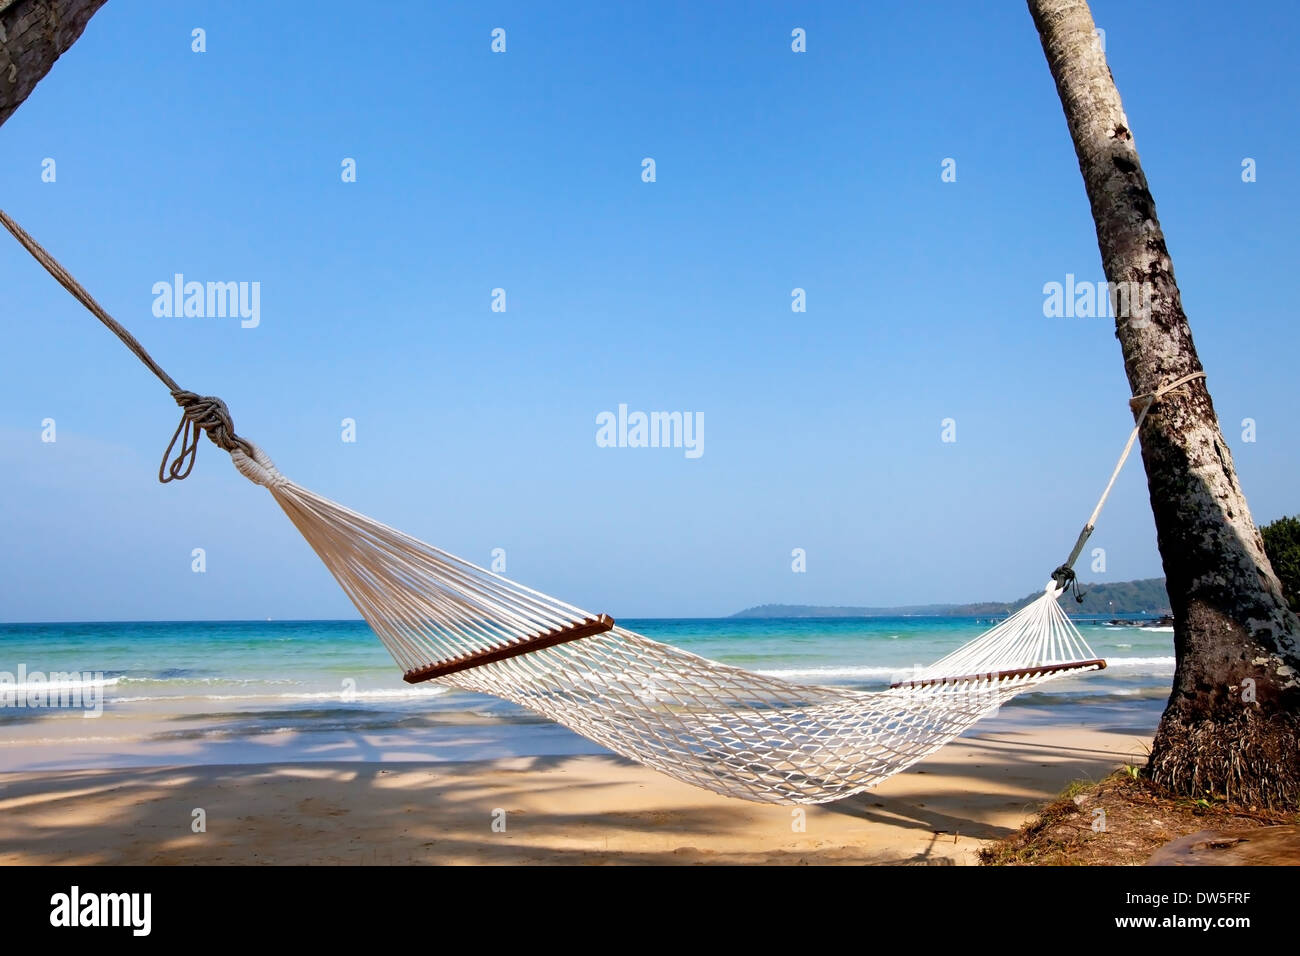 vacations, hammock on paradise beach Stock Photo